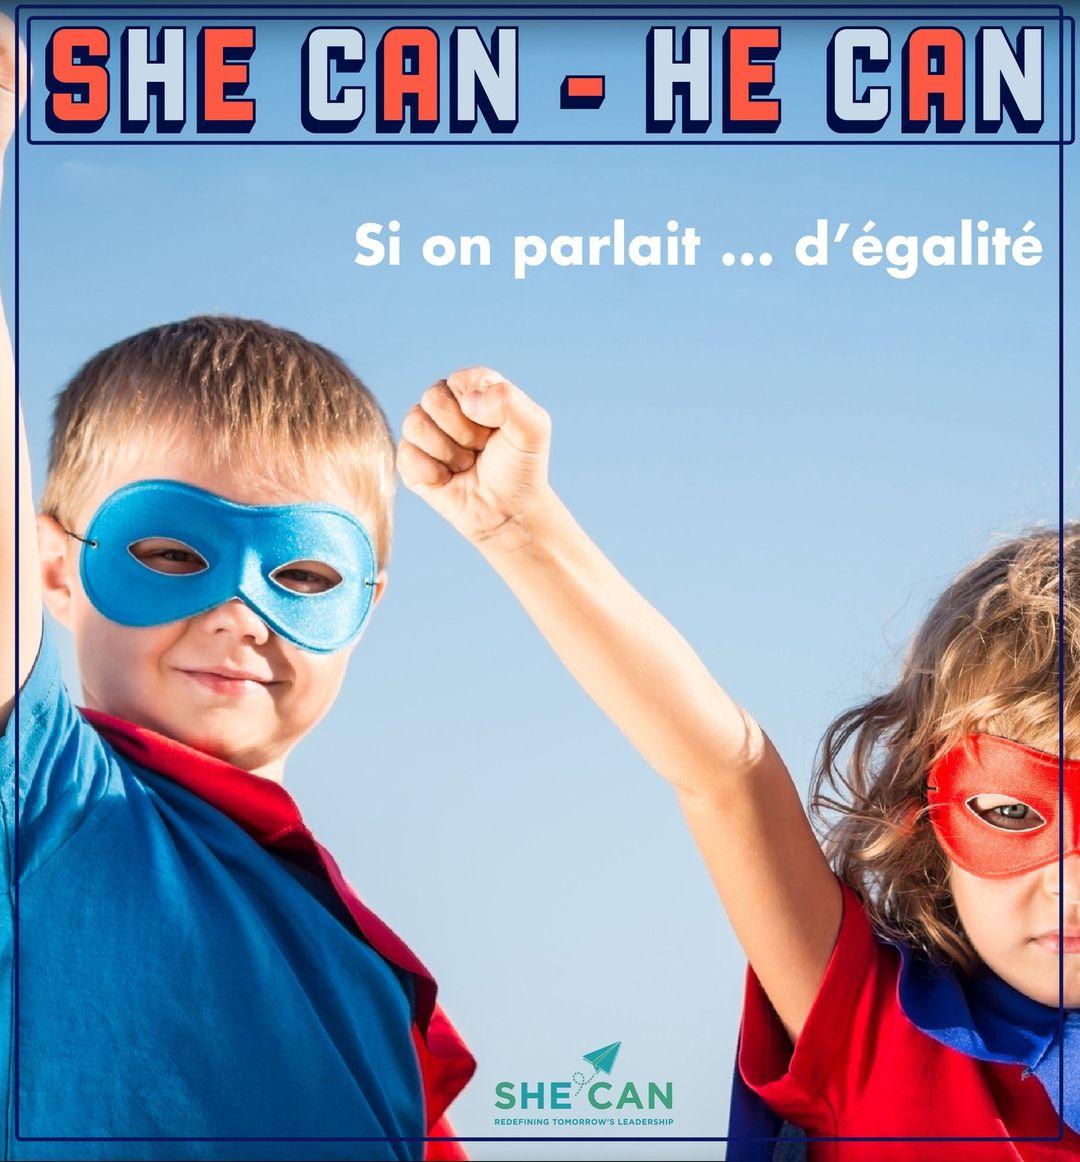 class="content__text"
 [ATELIERS DES SAMEDIS – SHE CAN HE CAN] 👥

La Médiathèque de Monaco propose un groupe de lecture et de parole à destination des enfants à partir de 8 ans ayant pour thème « Et si on parlait d’égalité… ».

👉 C’est demain, samedi 11 mars de 10h à 11h30 à la Bibliothèque Princesse Caroline sur inscription.

☎️ +377 93 15 22 72

@mediathequedemonaco@shecan_hecan 

 #shecanhecan #mediathequedemonaco #mairiedemonaco 
 